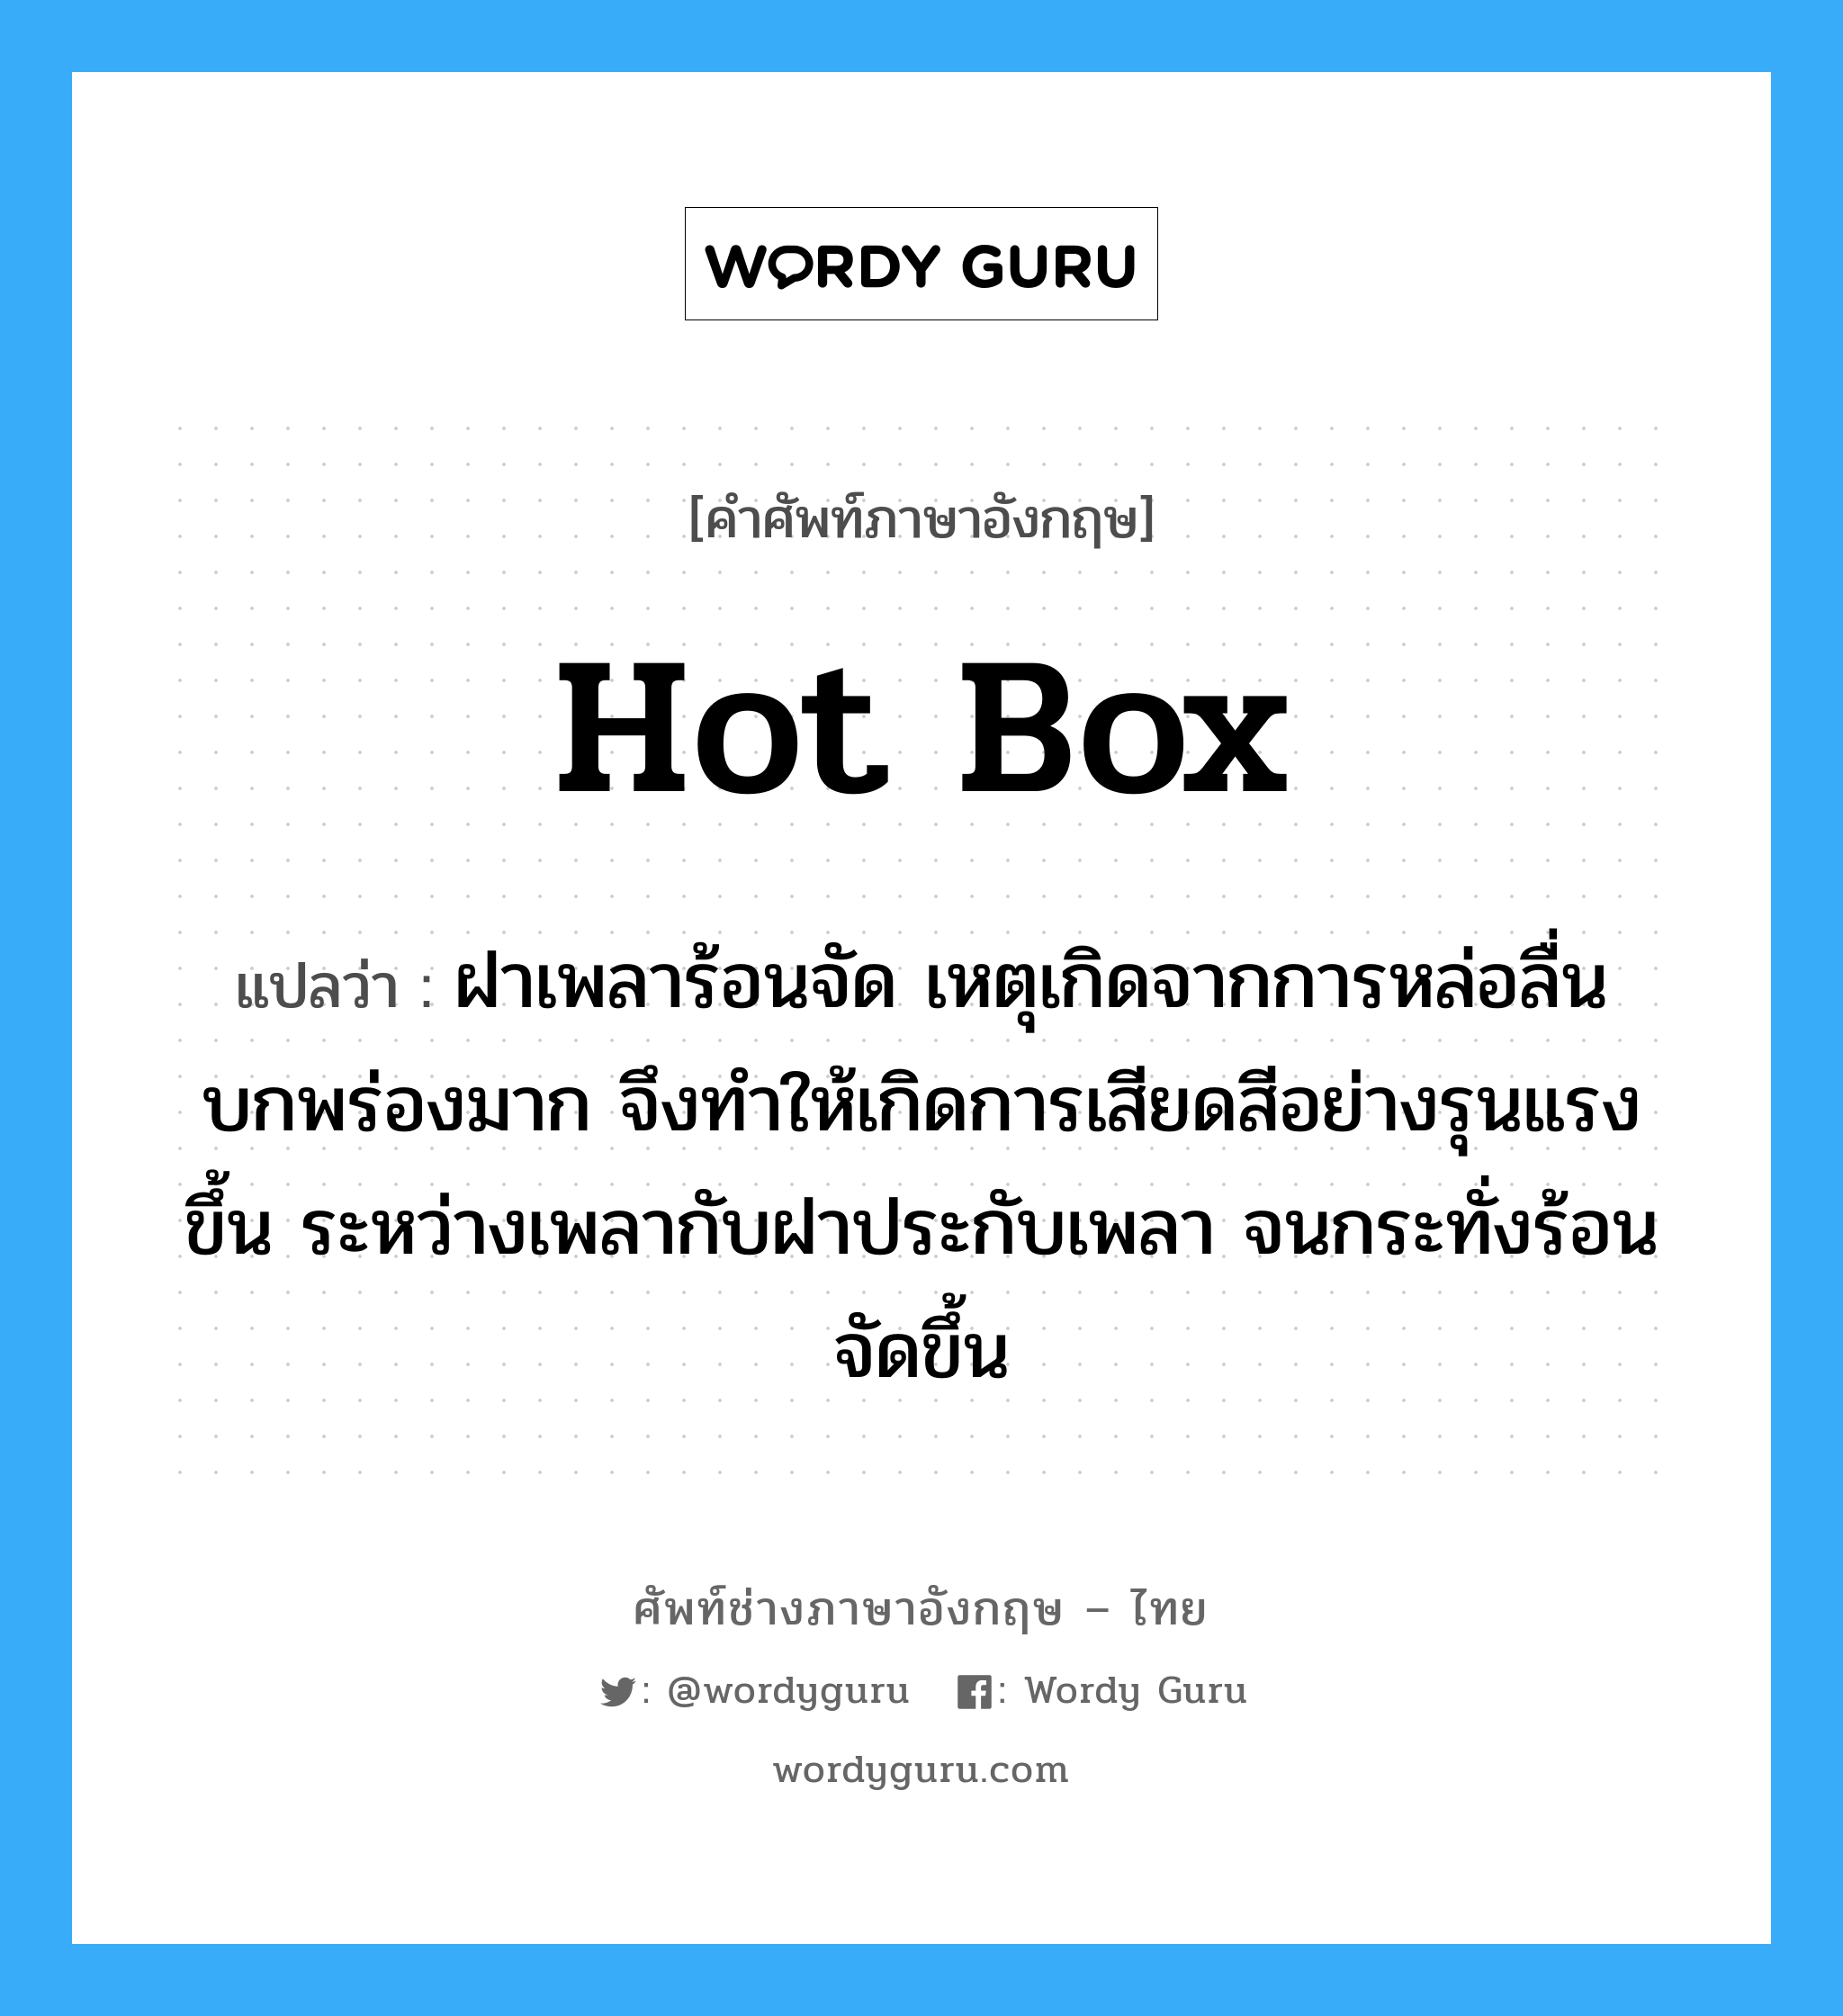 hot box แปลว่า?, คำศัพท์ช่างภาษาอังกฤษ - ไทย hot box คำศัพท์ภาษาอังกฤษ hot box แปลว่า ฝาเพลาร้อนจัด เหตุเกิดจากการหล่อลื่นบกพร่องมาก จึงทำให้เกิดการเสียดสีอย่างรุนแรงขึ้น ระหว่างเพลากับฝาประกับเพลา จนกระทั่งร้อนจัดขึ้น